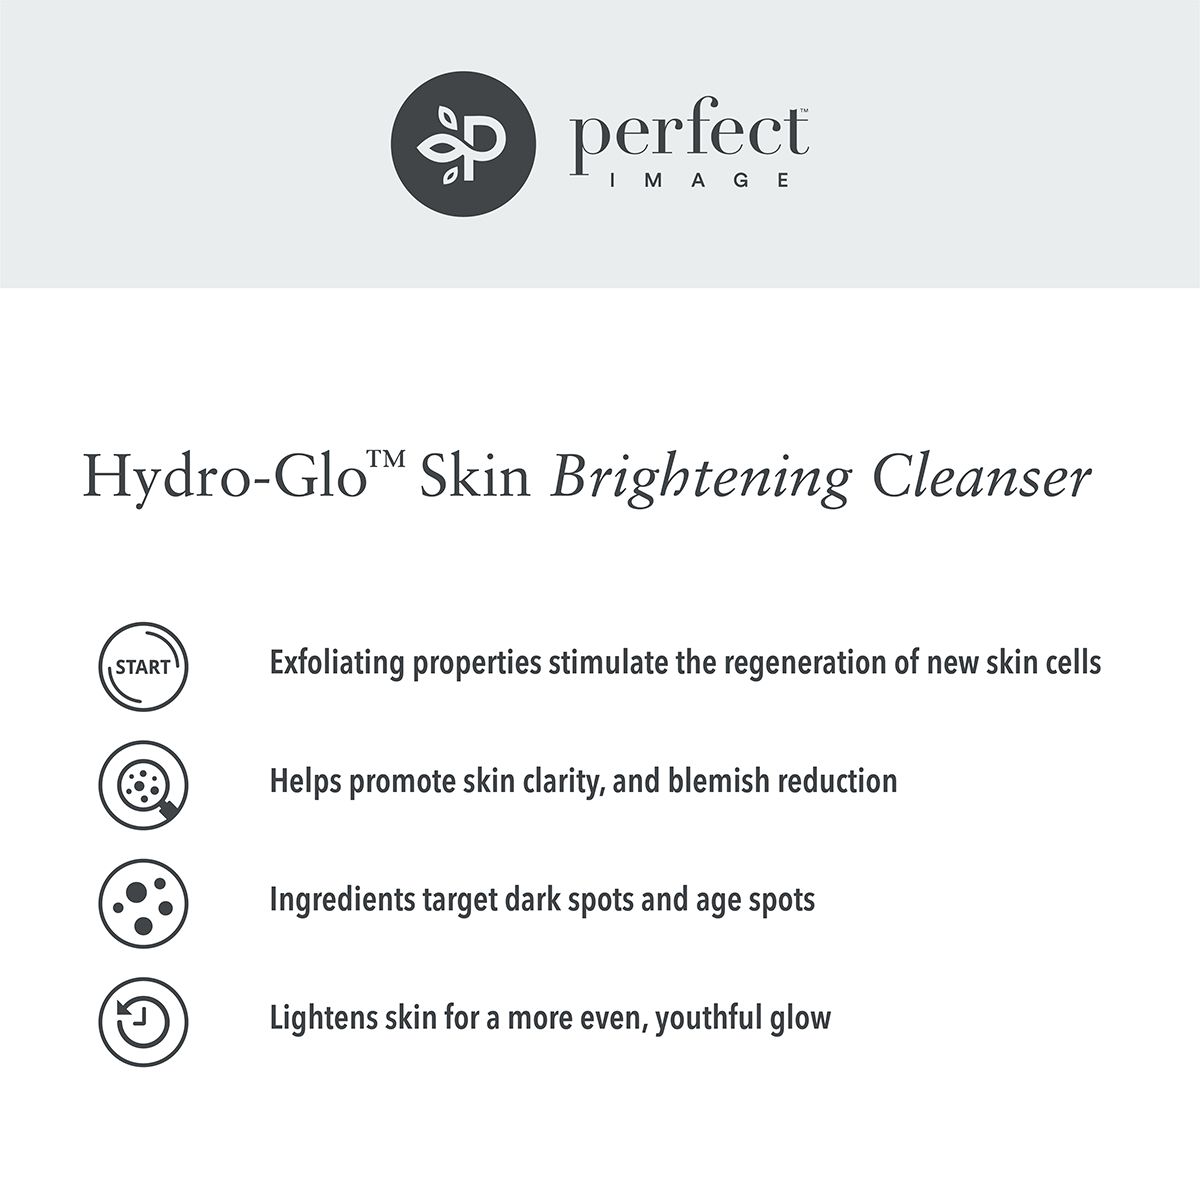 Hydro-Glo Skin Brightening Cleanser